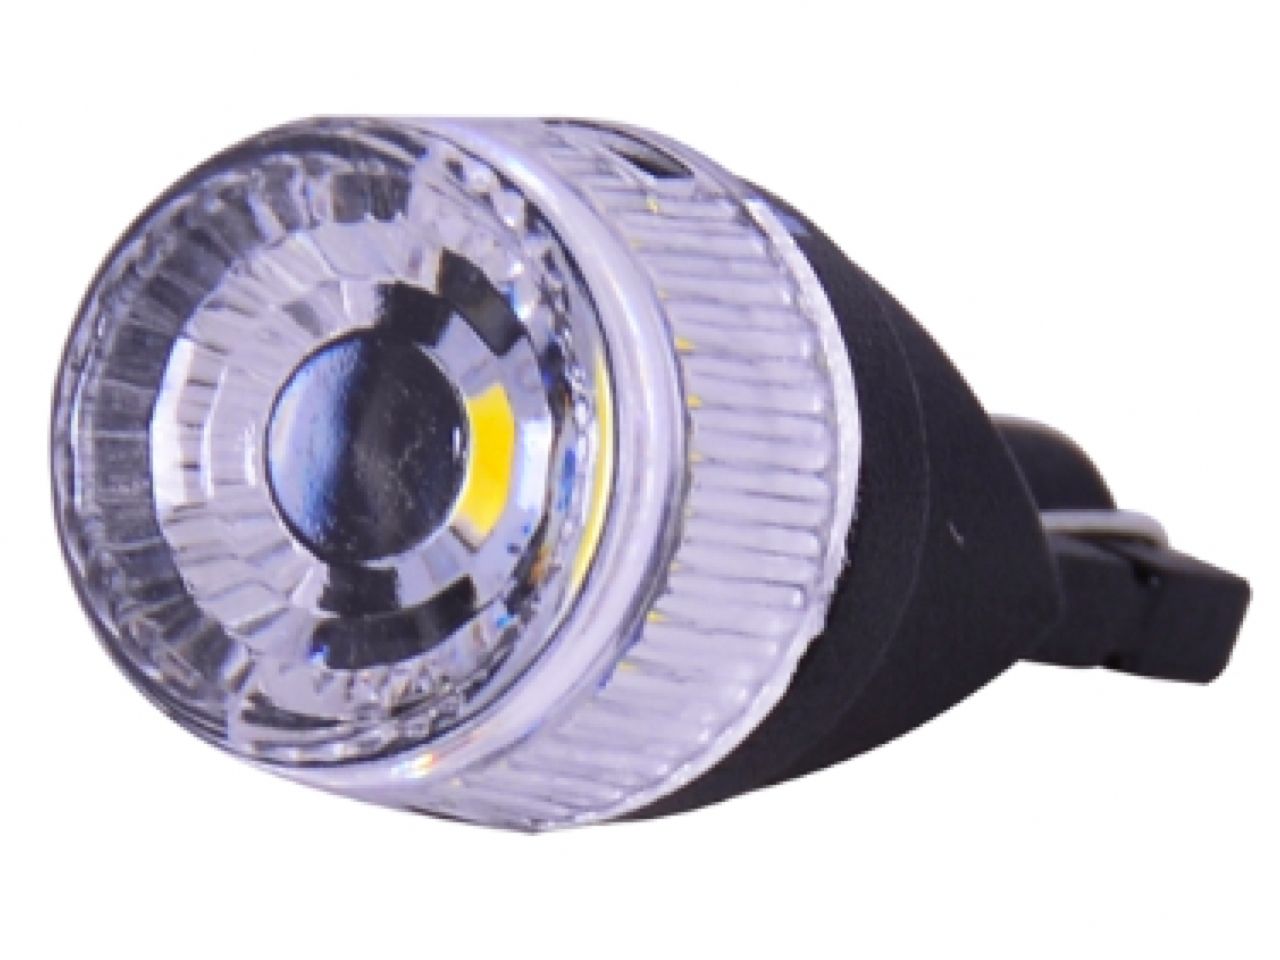 PIAA 168 (T10) LED Wedge Bulbs,White 6000K,30 Lumens